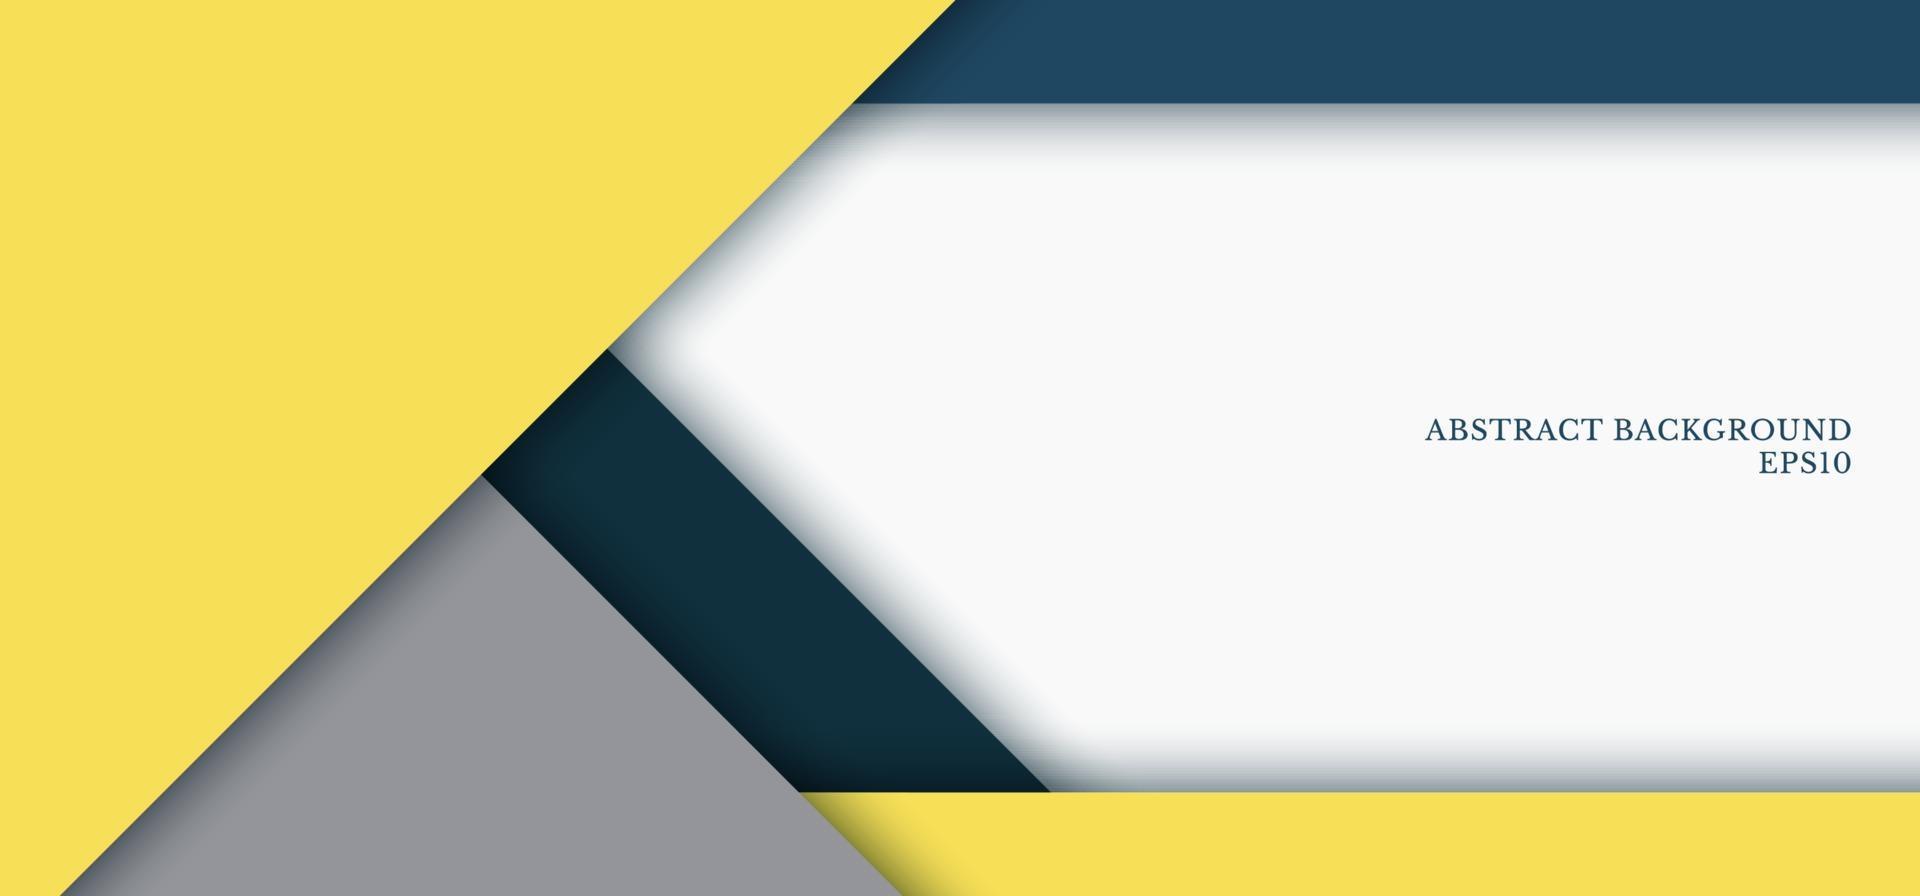 Bạn đang tìm kiếm một mẫu banner web đẹp mắt? Chúng tôi có thư viện hàng triệu tài nguyên đáp ứng mọi nhu cầu của bạn. Tại đây bạn có thể tìm được những mẫu banner web màu xanh dương, xám, tam giác hình học màu vàng... để tạo ra một trải nghiệm vô cùng tuyệt vời cho người dùng. 